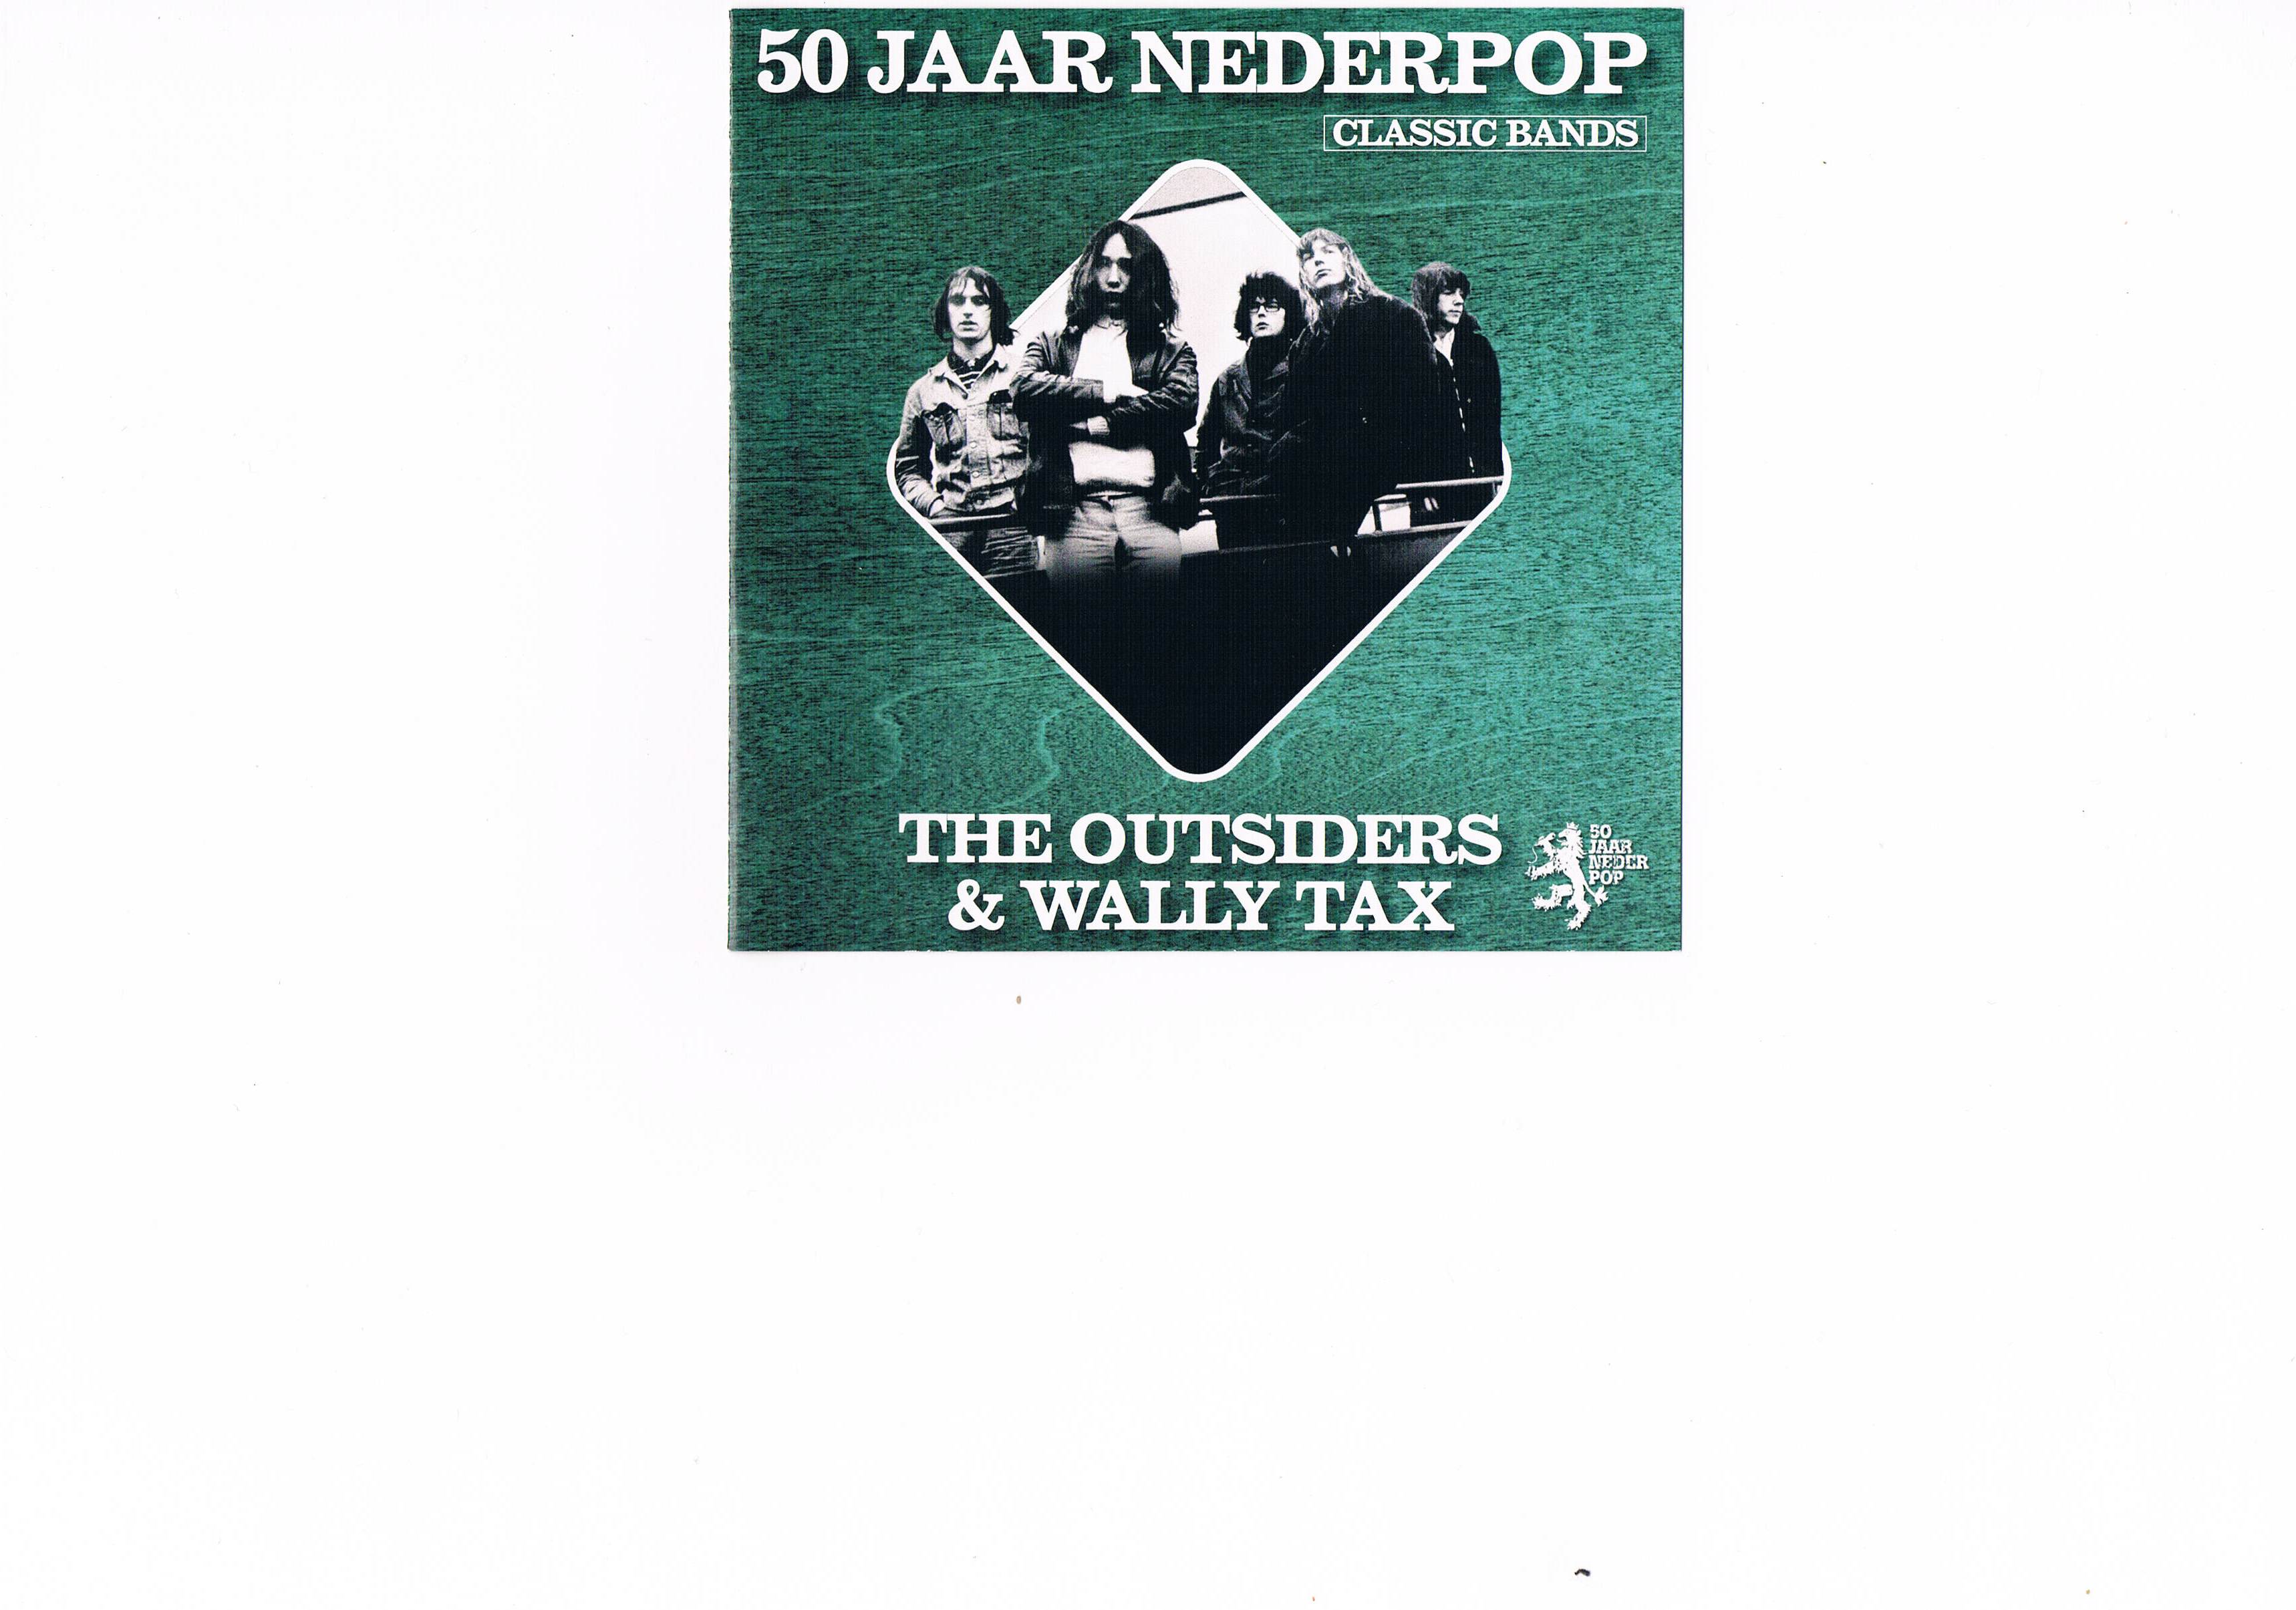 The Outsiders & Wally Tax - 50 Jaar Nederpop Classic Bands in DTS-wav ( op verzoek)